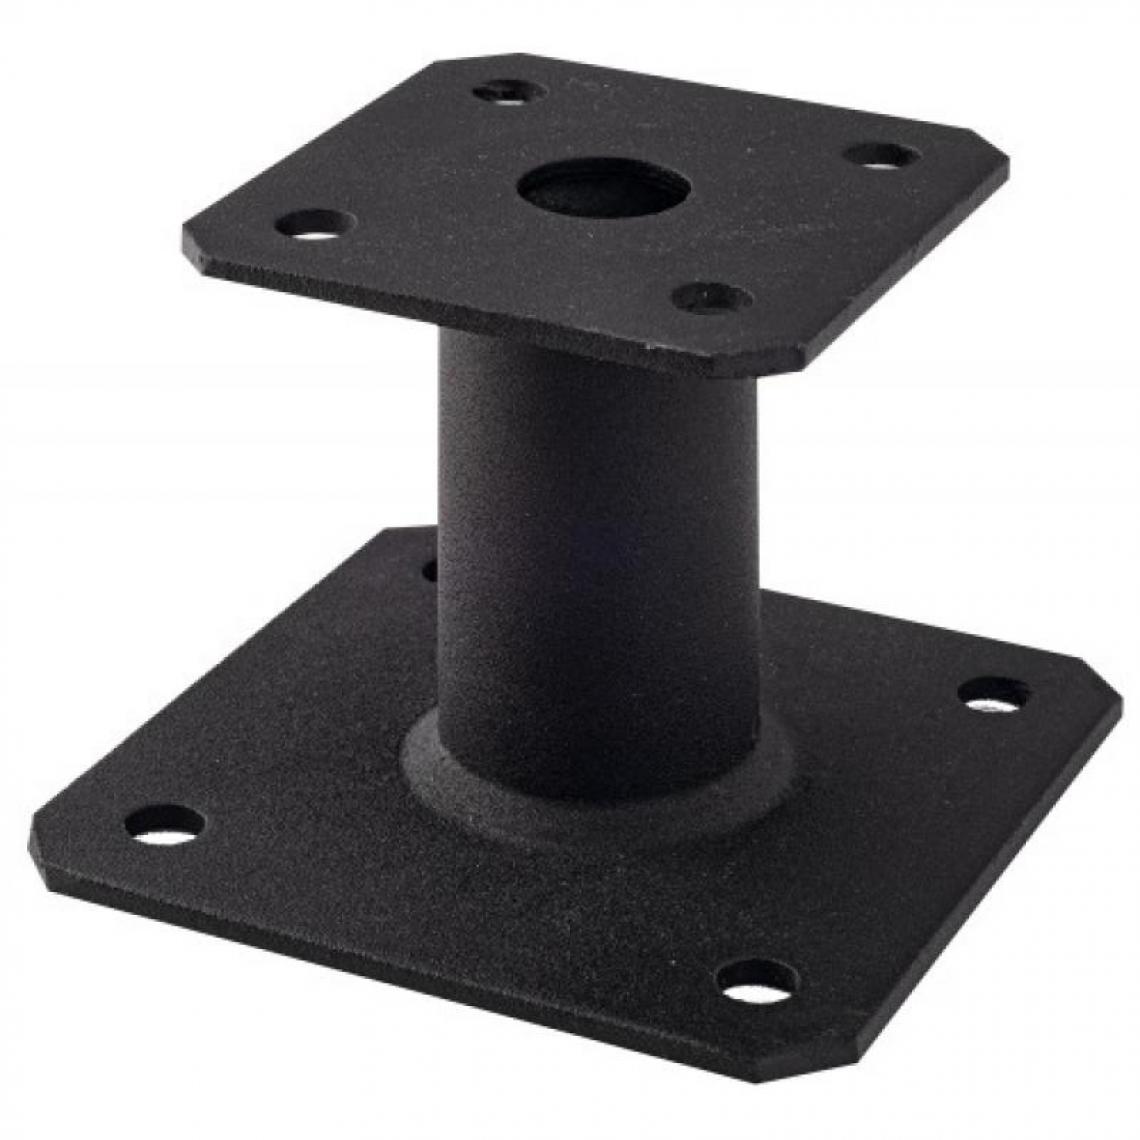 Simpson - Pied de poteau noir à platine fixe, épaisseur 4mm, base 130x130mm, platine 100x100mm, hauteur - Équerre étagère